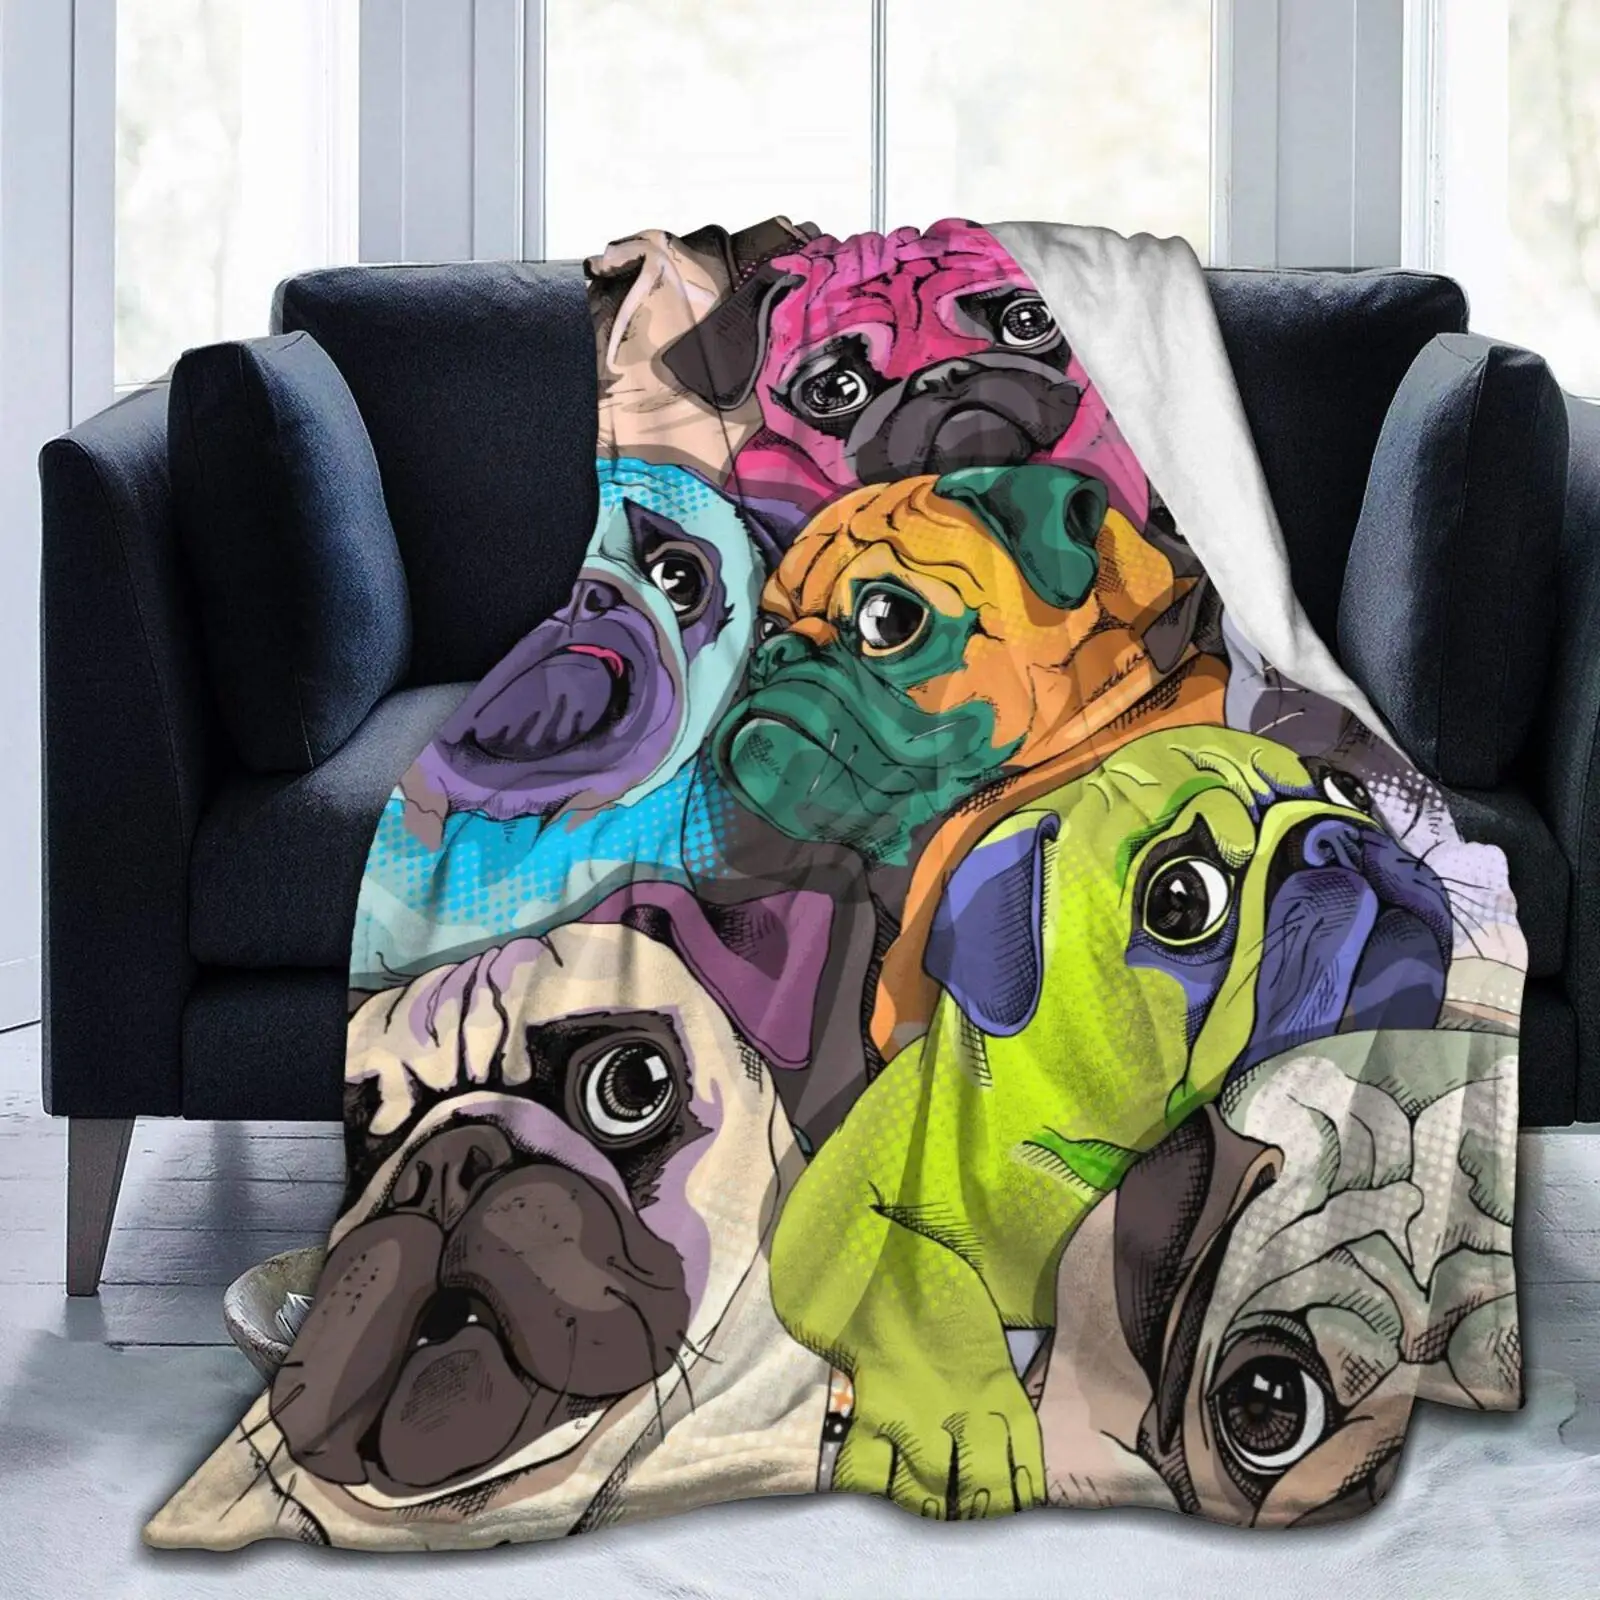 

Мягкое фланелевое одеяло, супер мягкое покрывало для кушетки, кресла, дивана, кровати, рисования Мопсов, забавных щенков